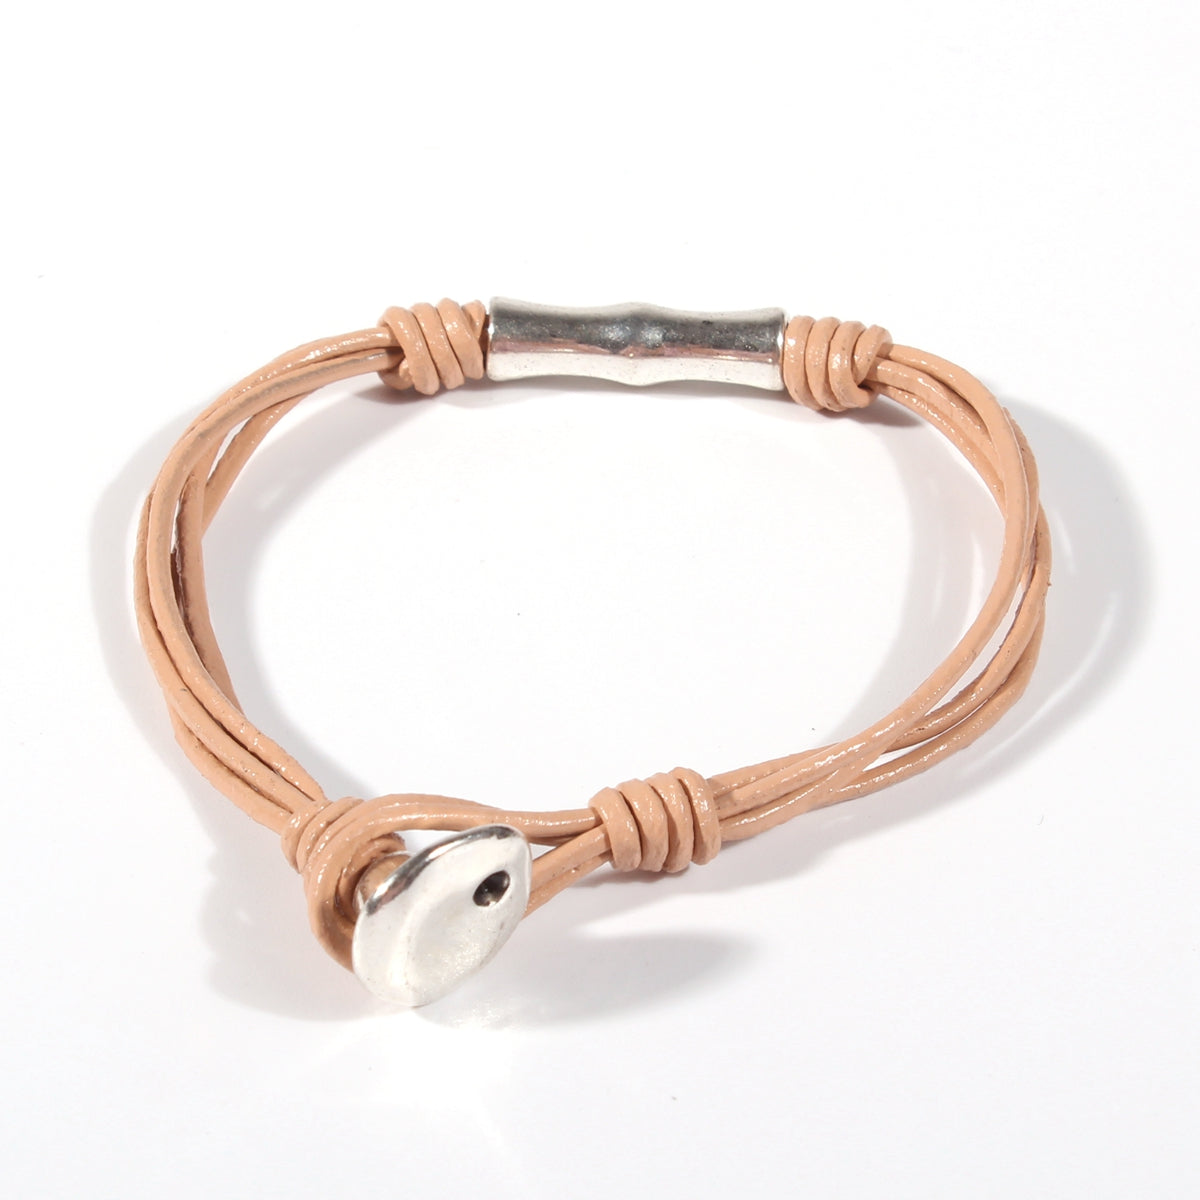 Genuine leather handmade women's bracelet MBR-08